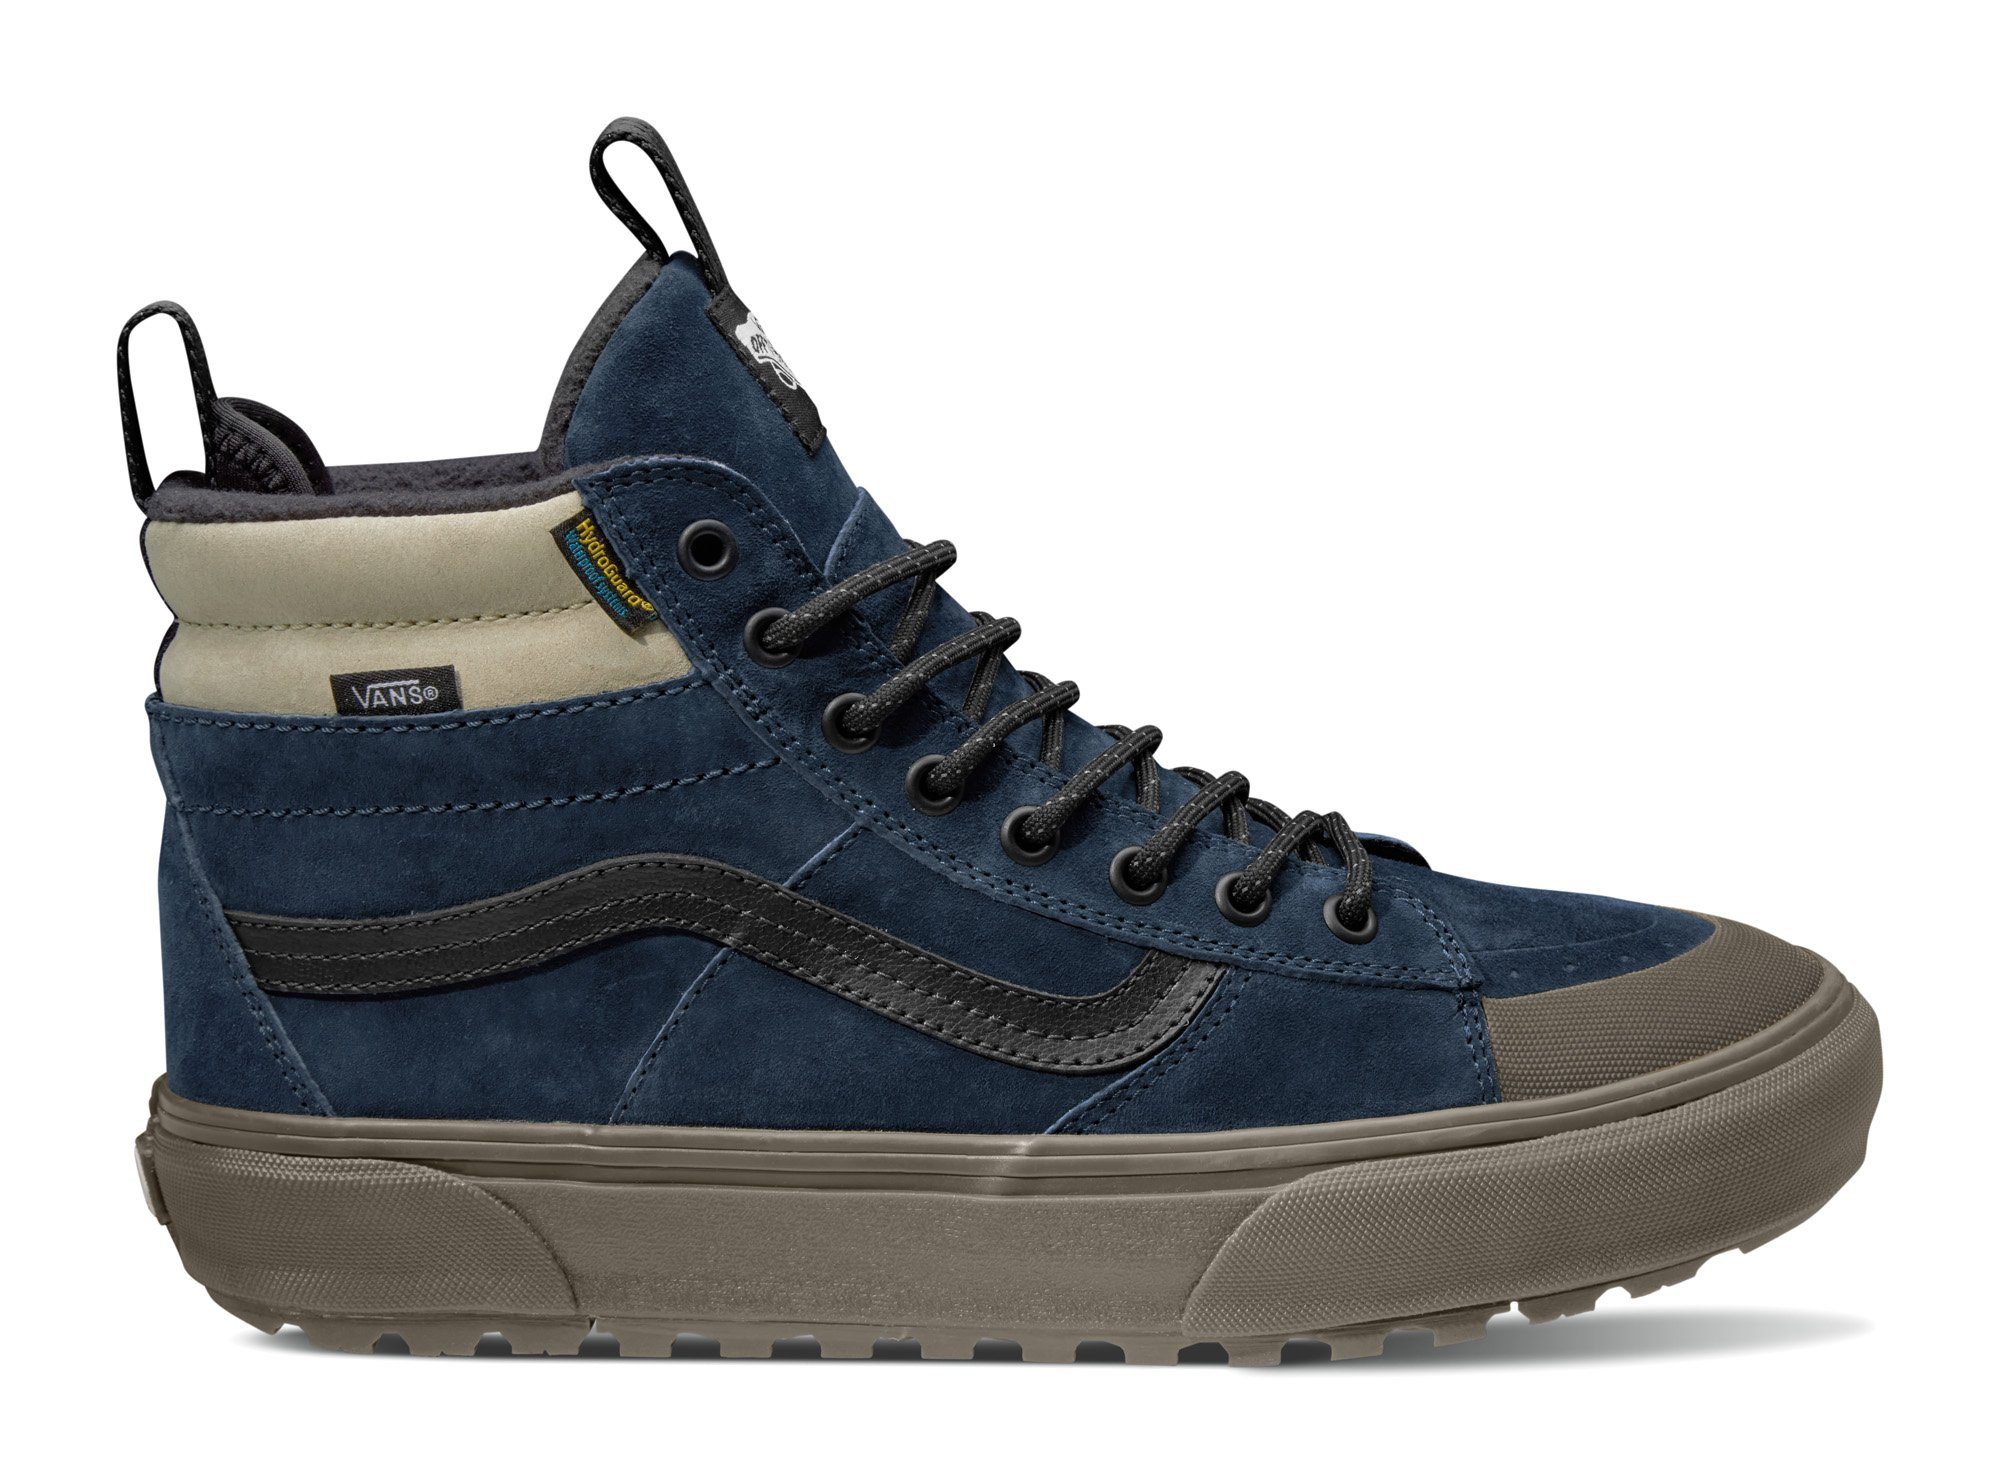 Vans SK8-Hi MTE-2 Sneaker dunkelblau an der mit Ferse kontrastfarbenem Logobadge